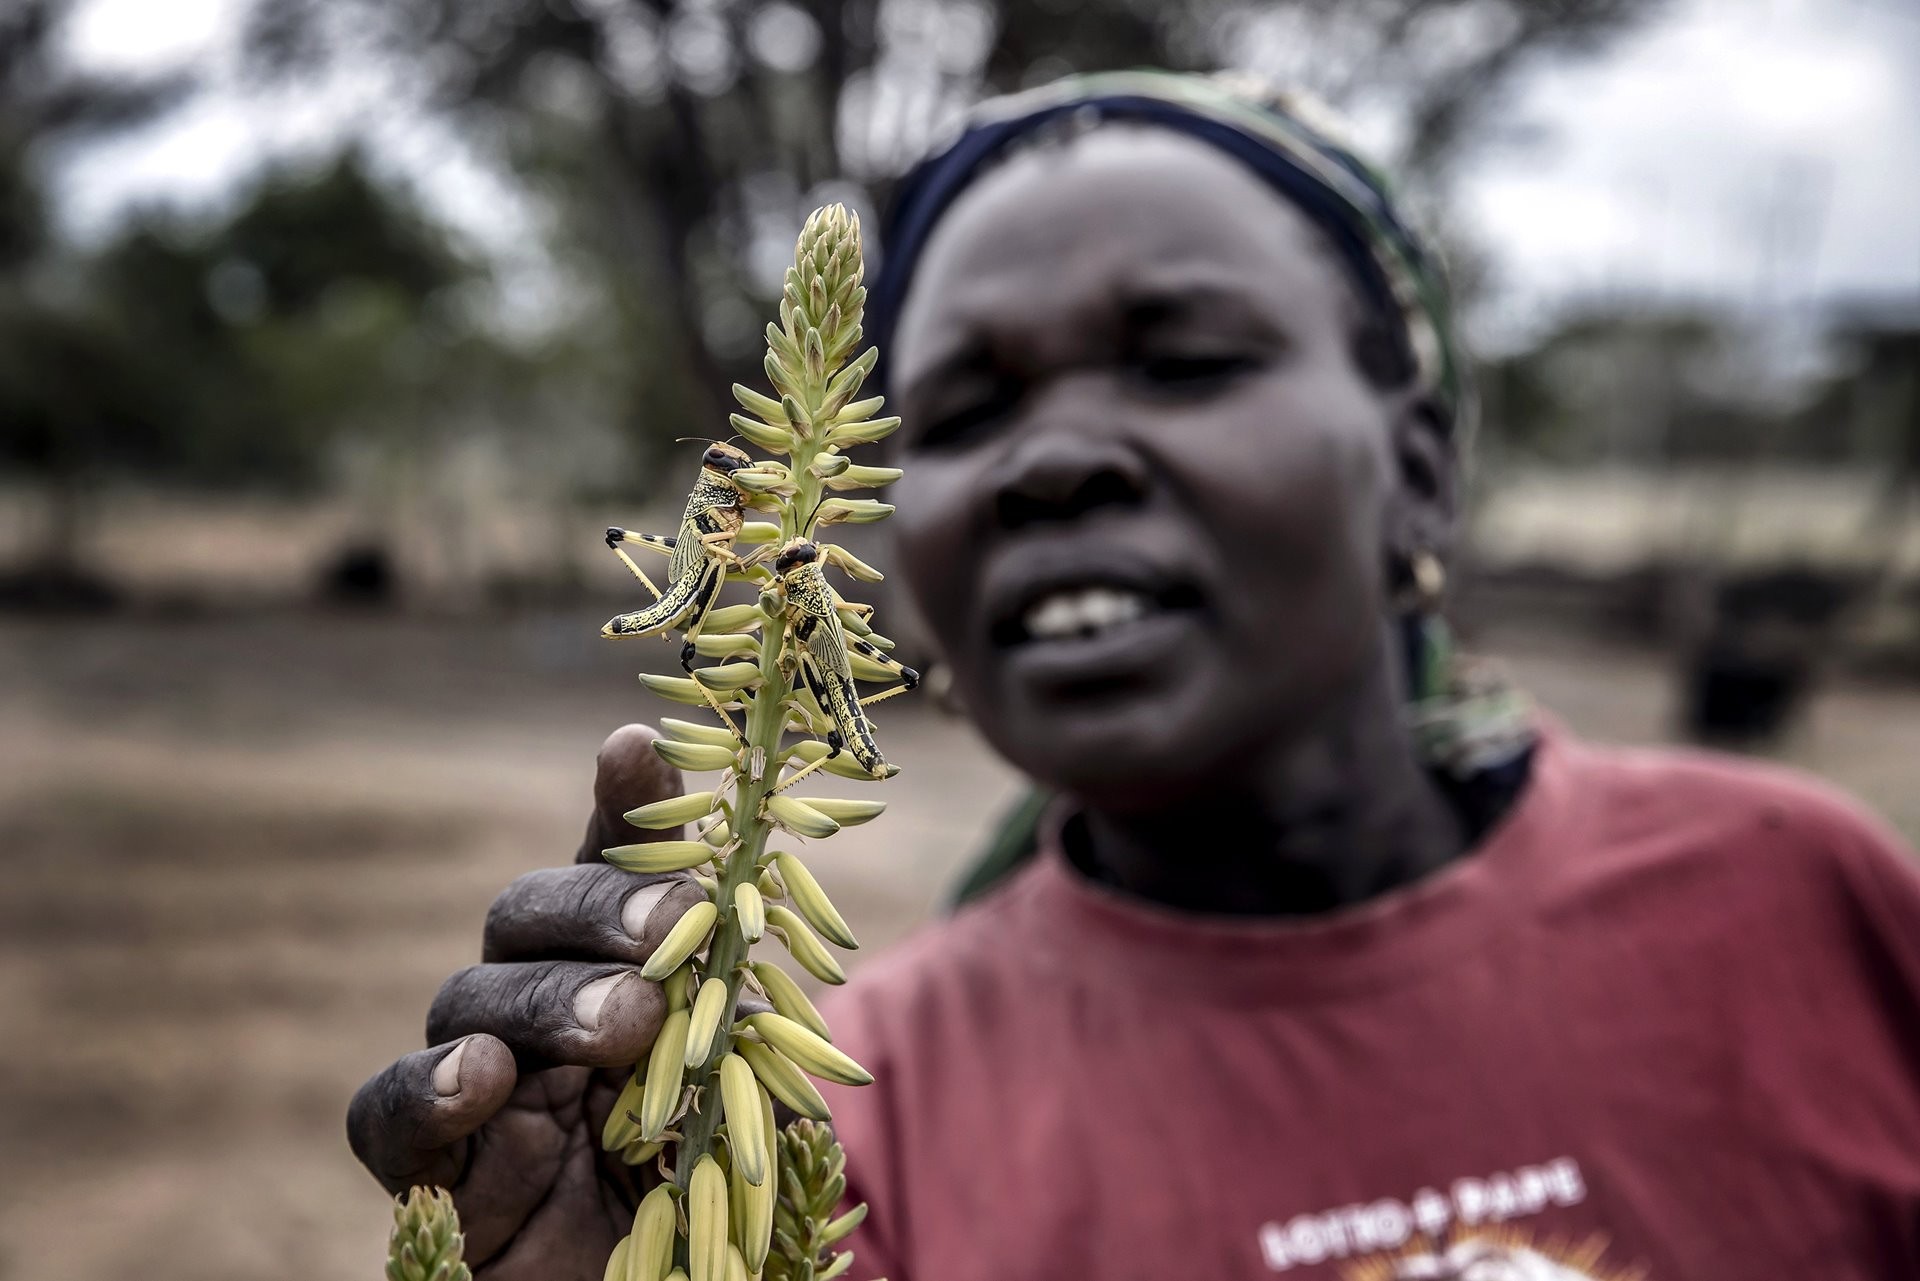 3 место в категории Природа, серия, 2021. Нашествие саранчи на ферме в округе Туркана, Кения. Автор Луис Тато